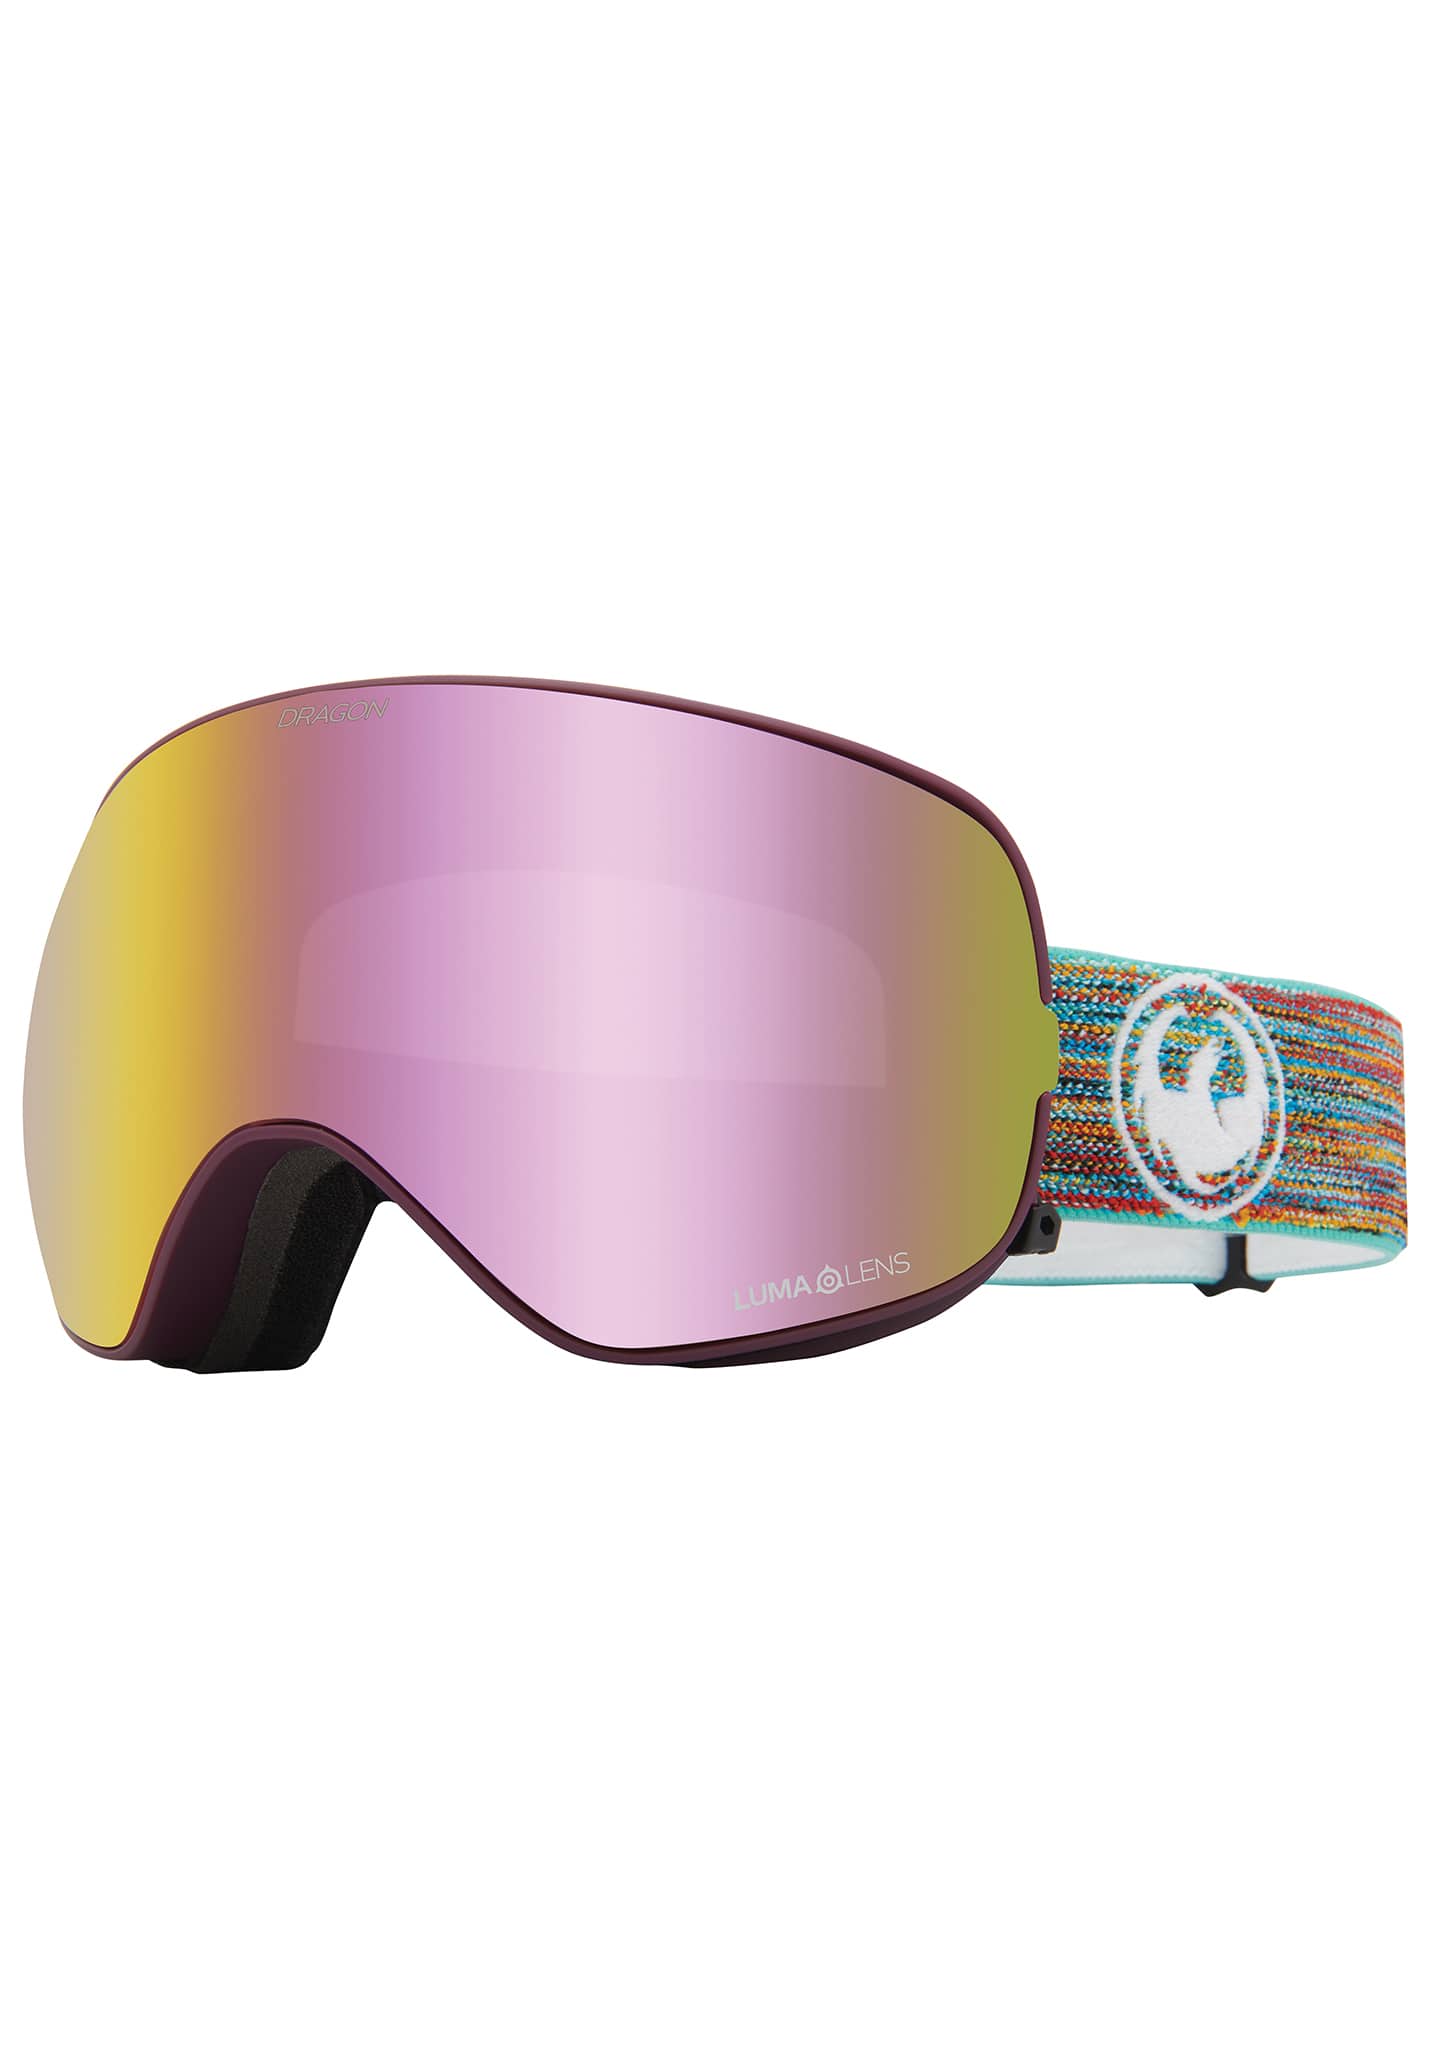 Dragon X2s Snowboardbrillen zusammen fetzen / lumalens pink ion + lumalens dark smoke One Size